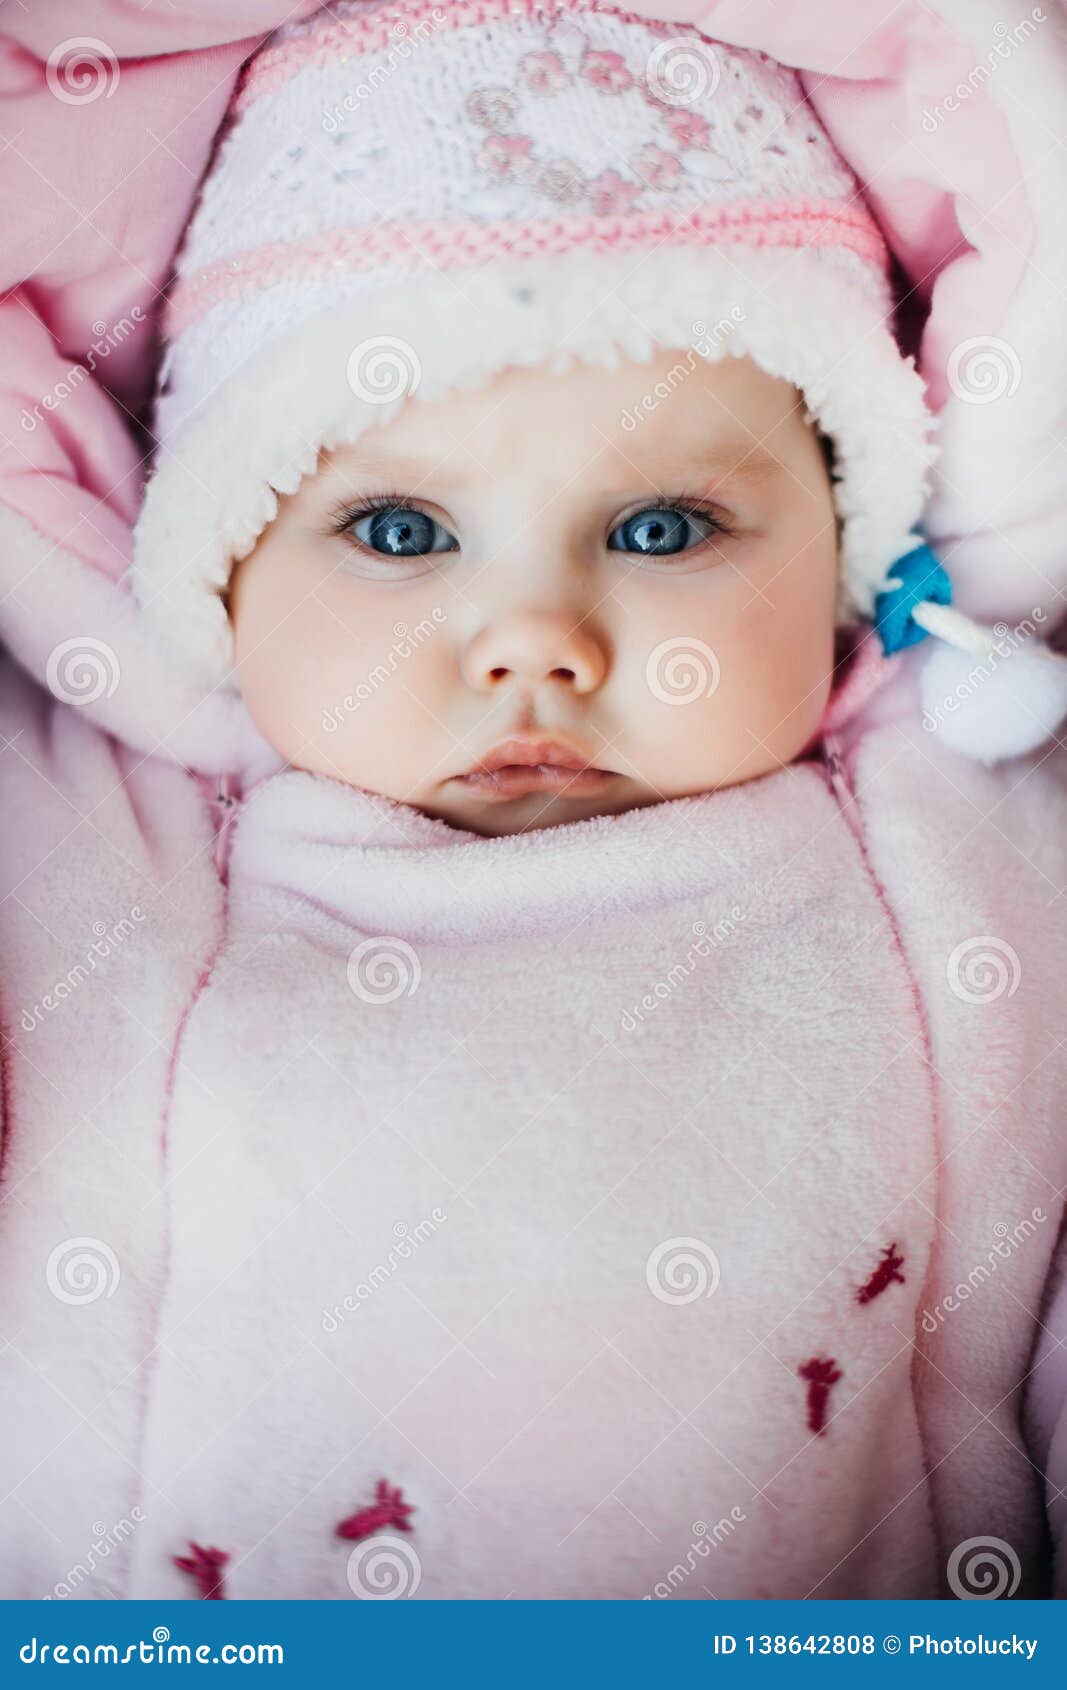 Nouveau-né bébé bleu yeux humains plein rond 